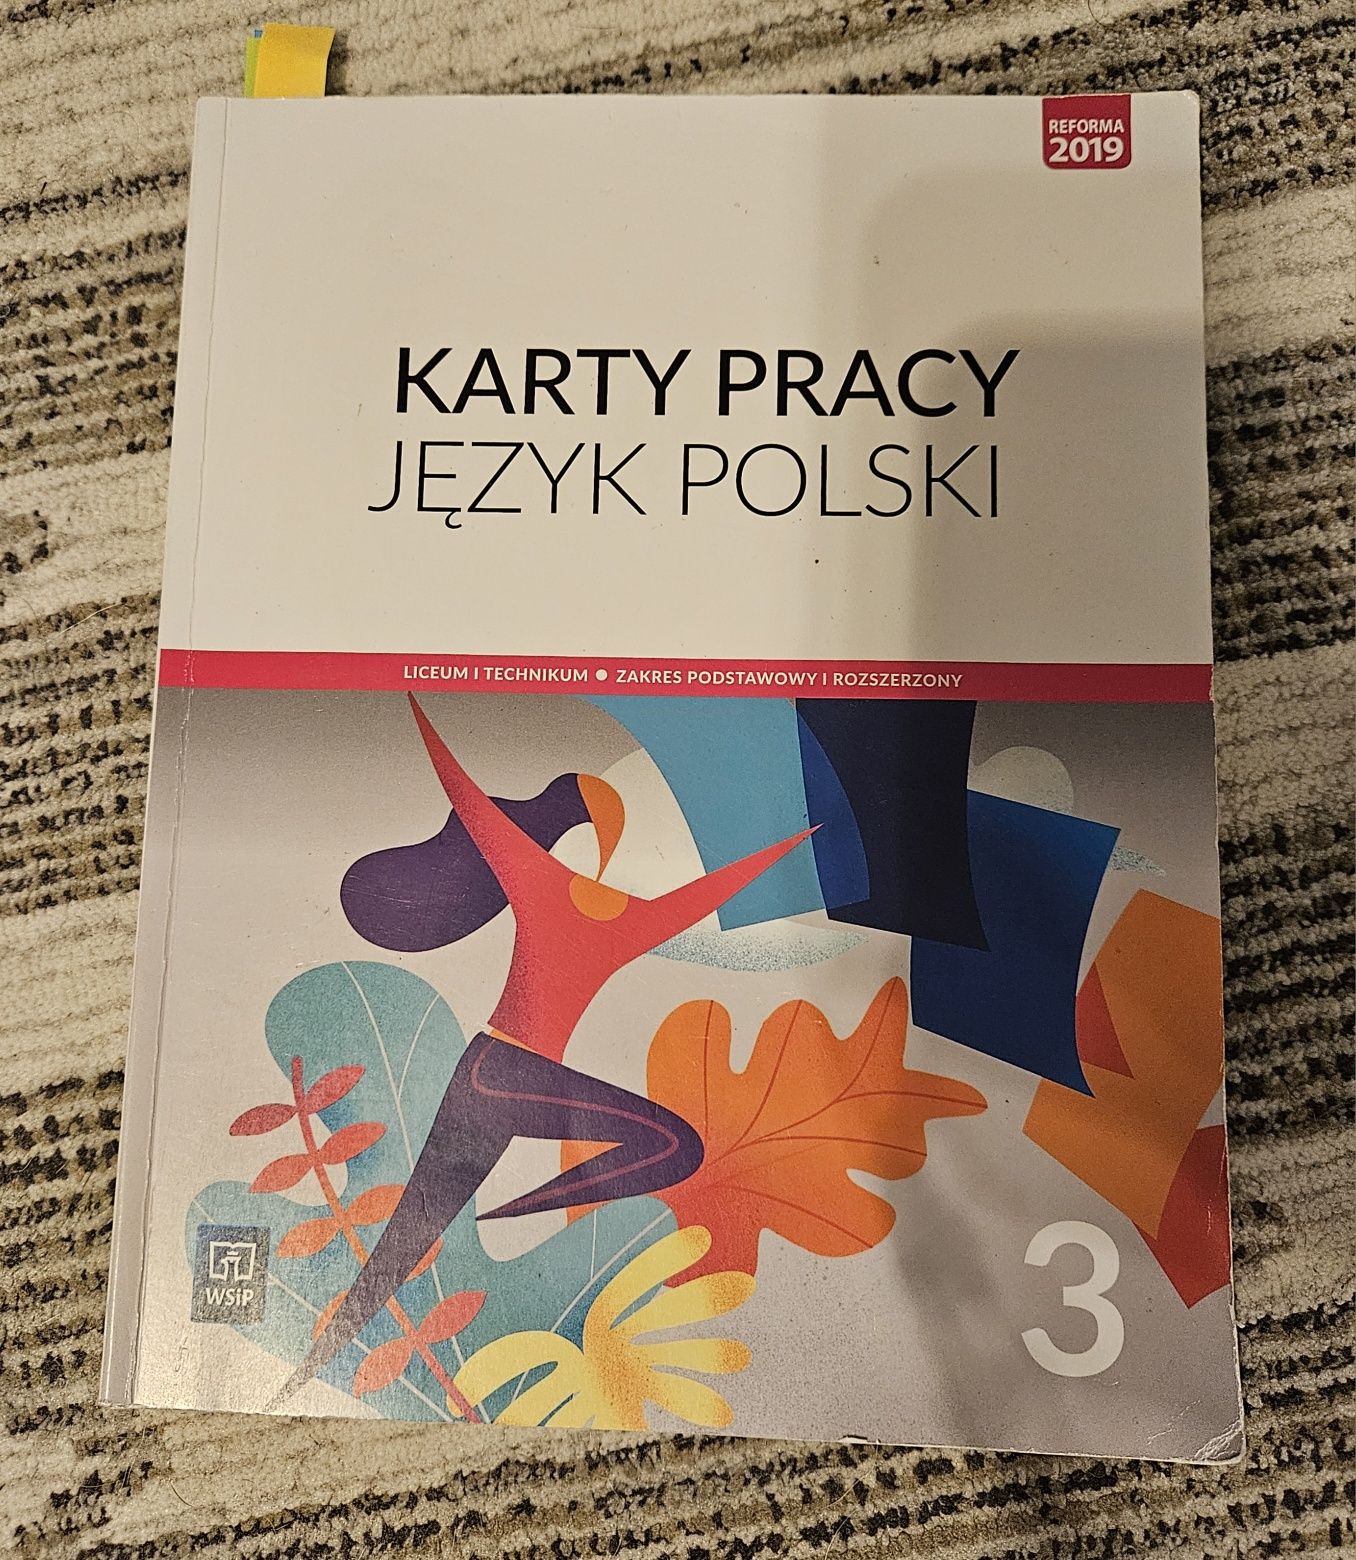 Katy pracy język polski 3, wsip, zakres podstawowy i rozszerzony